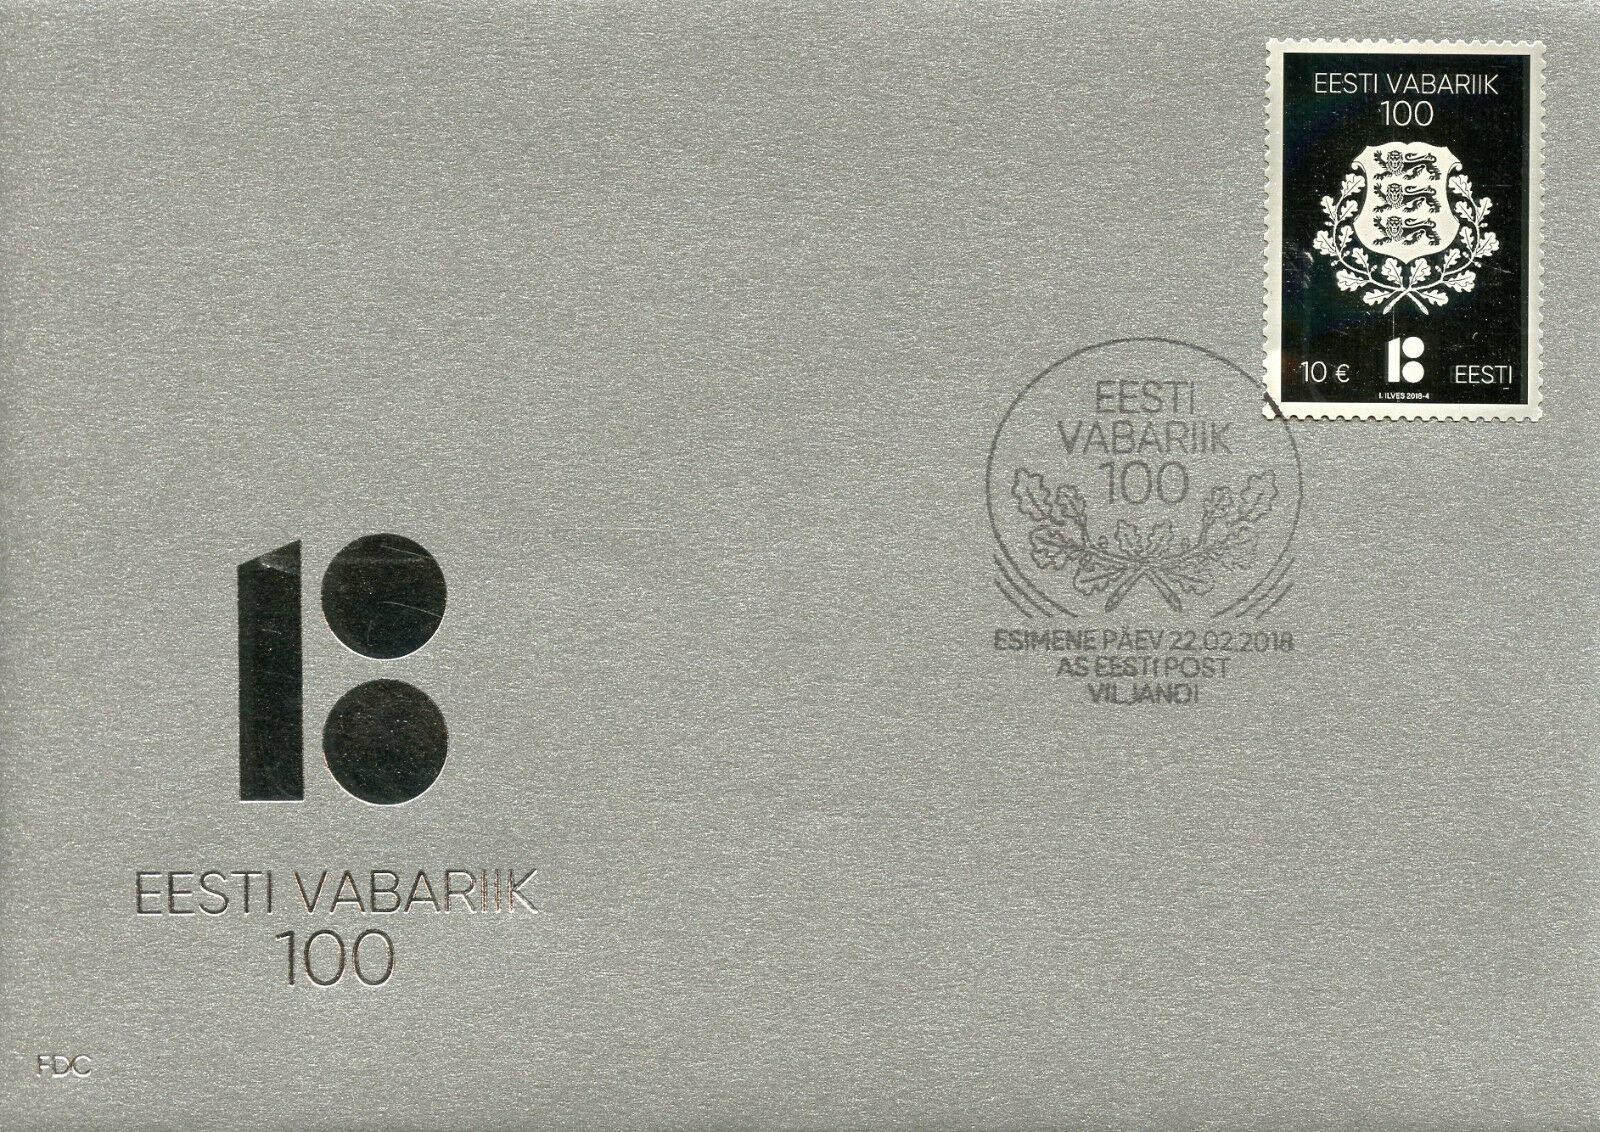 Estonia 2018 FDC Republic of Estonia Centenary 1v Cover Silver Stamp Stamps